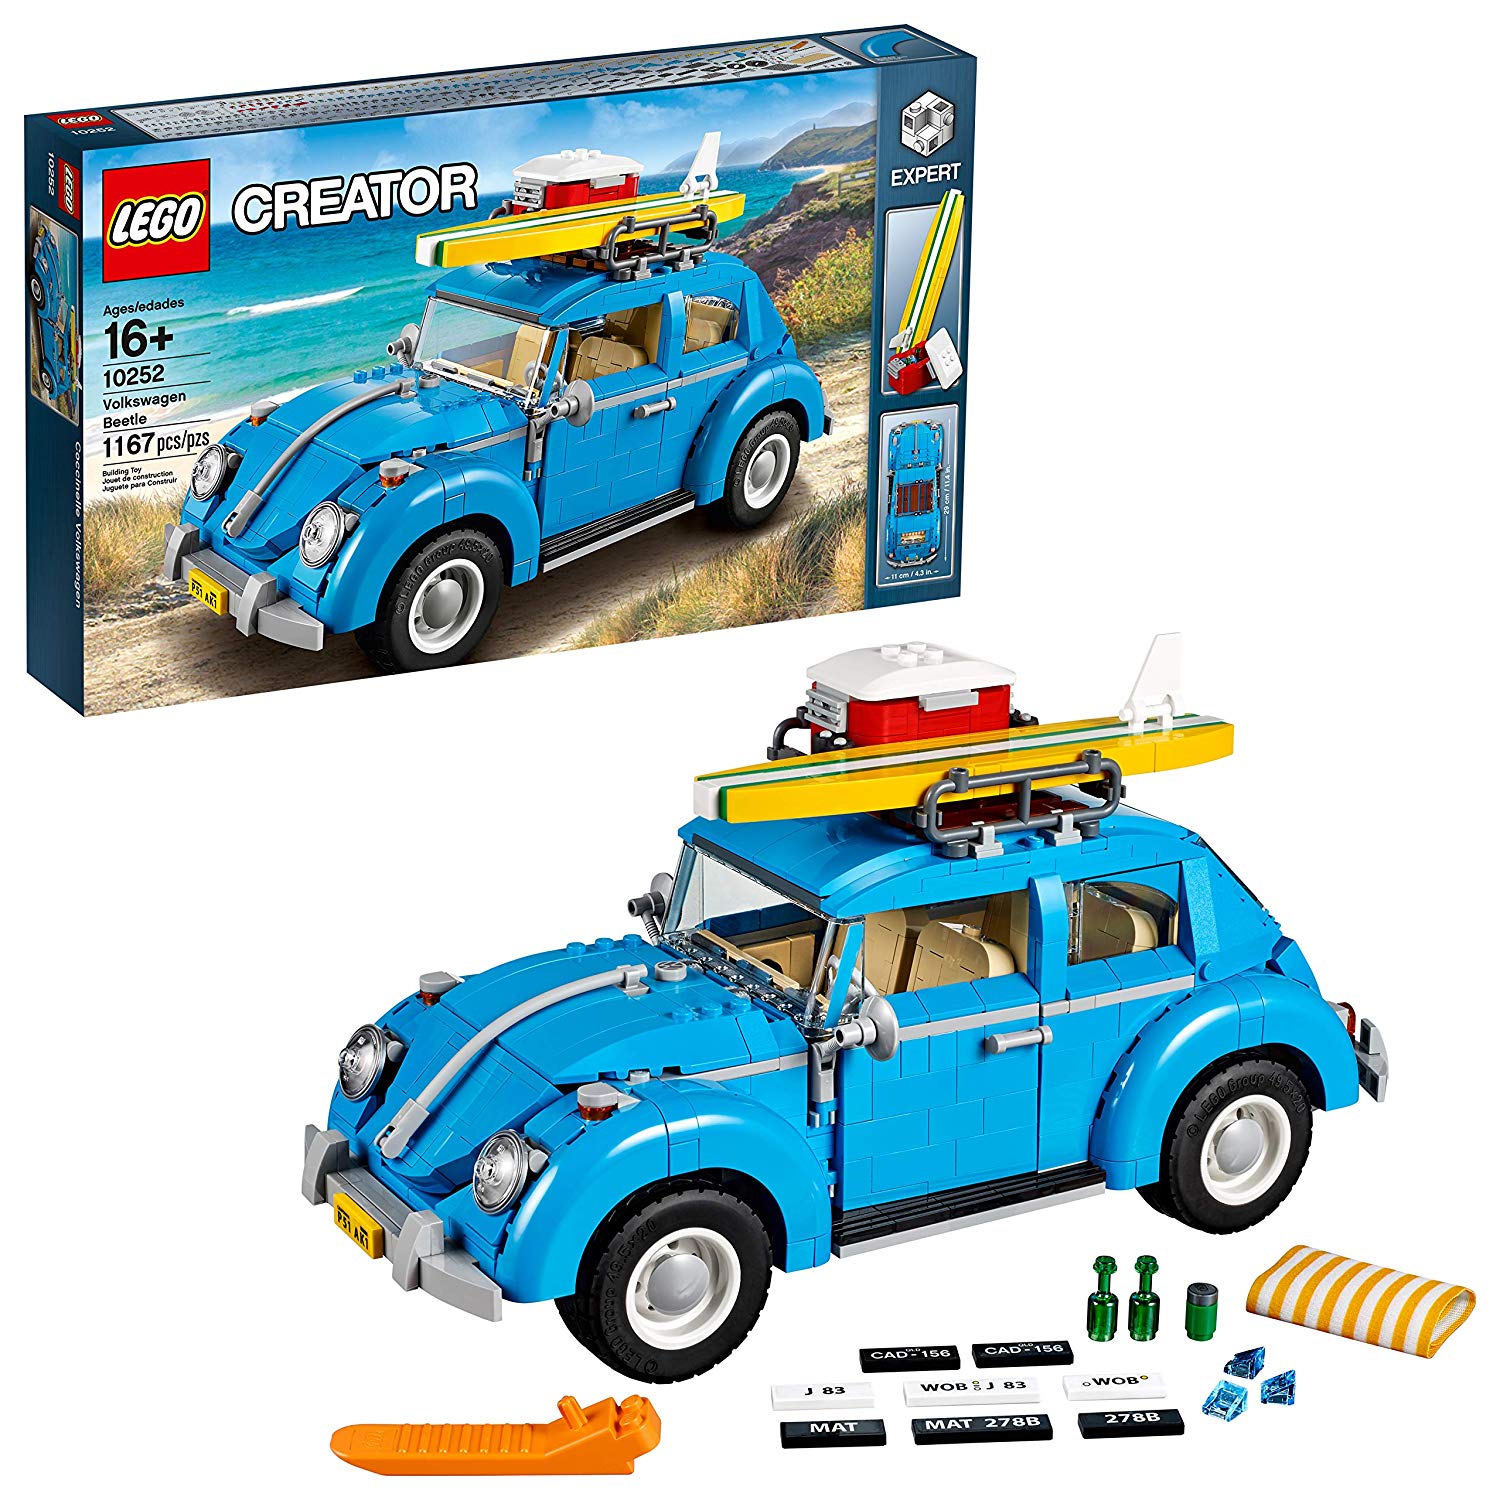 Lego Creator Expert Volkswagen Beetle Building Kit By Lego